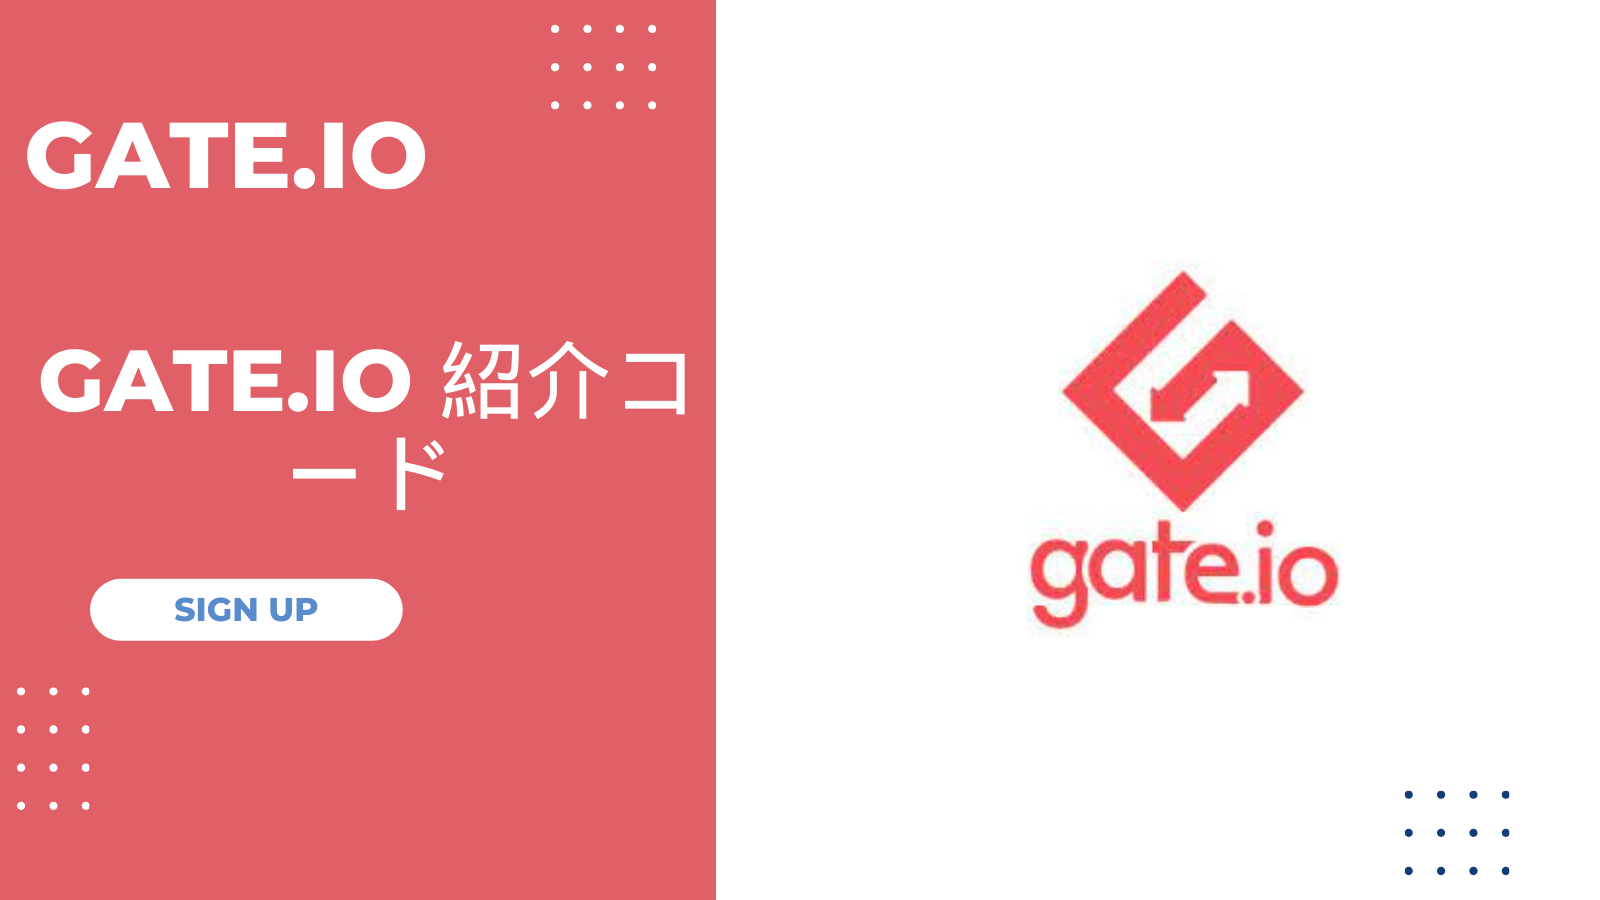 Gate.io 紹介コード